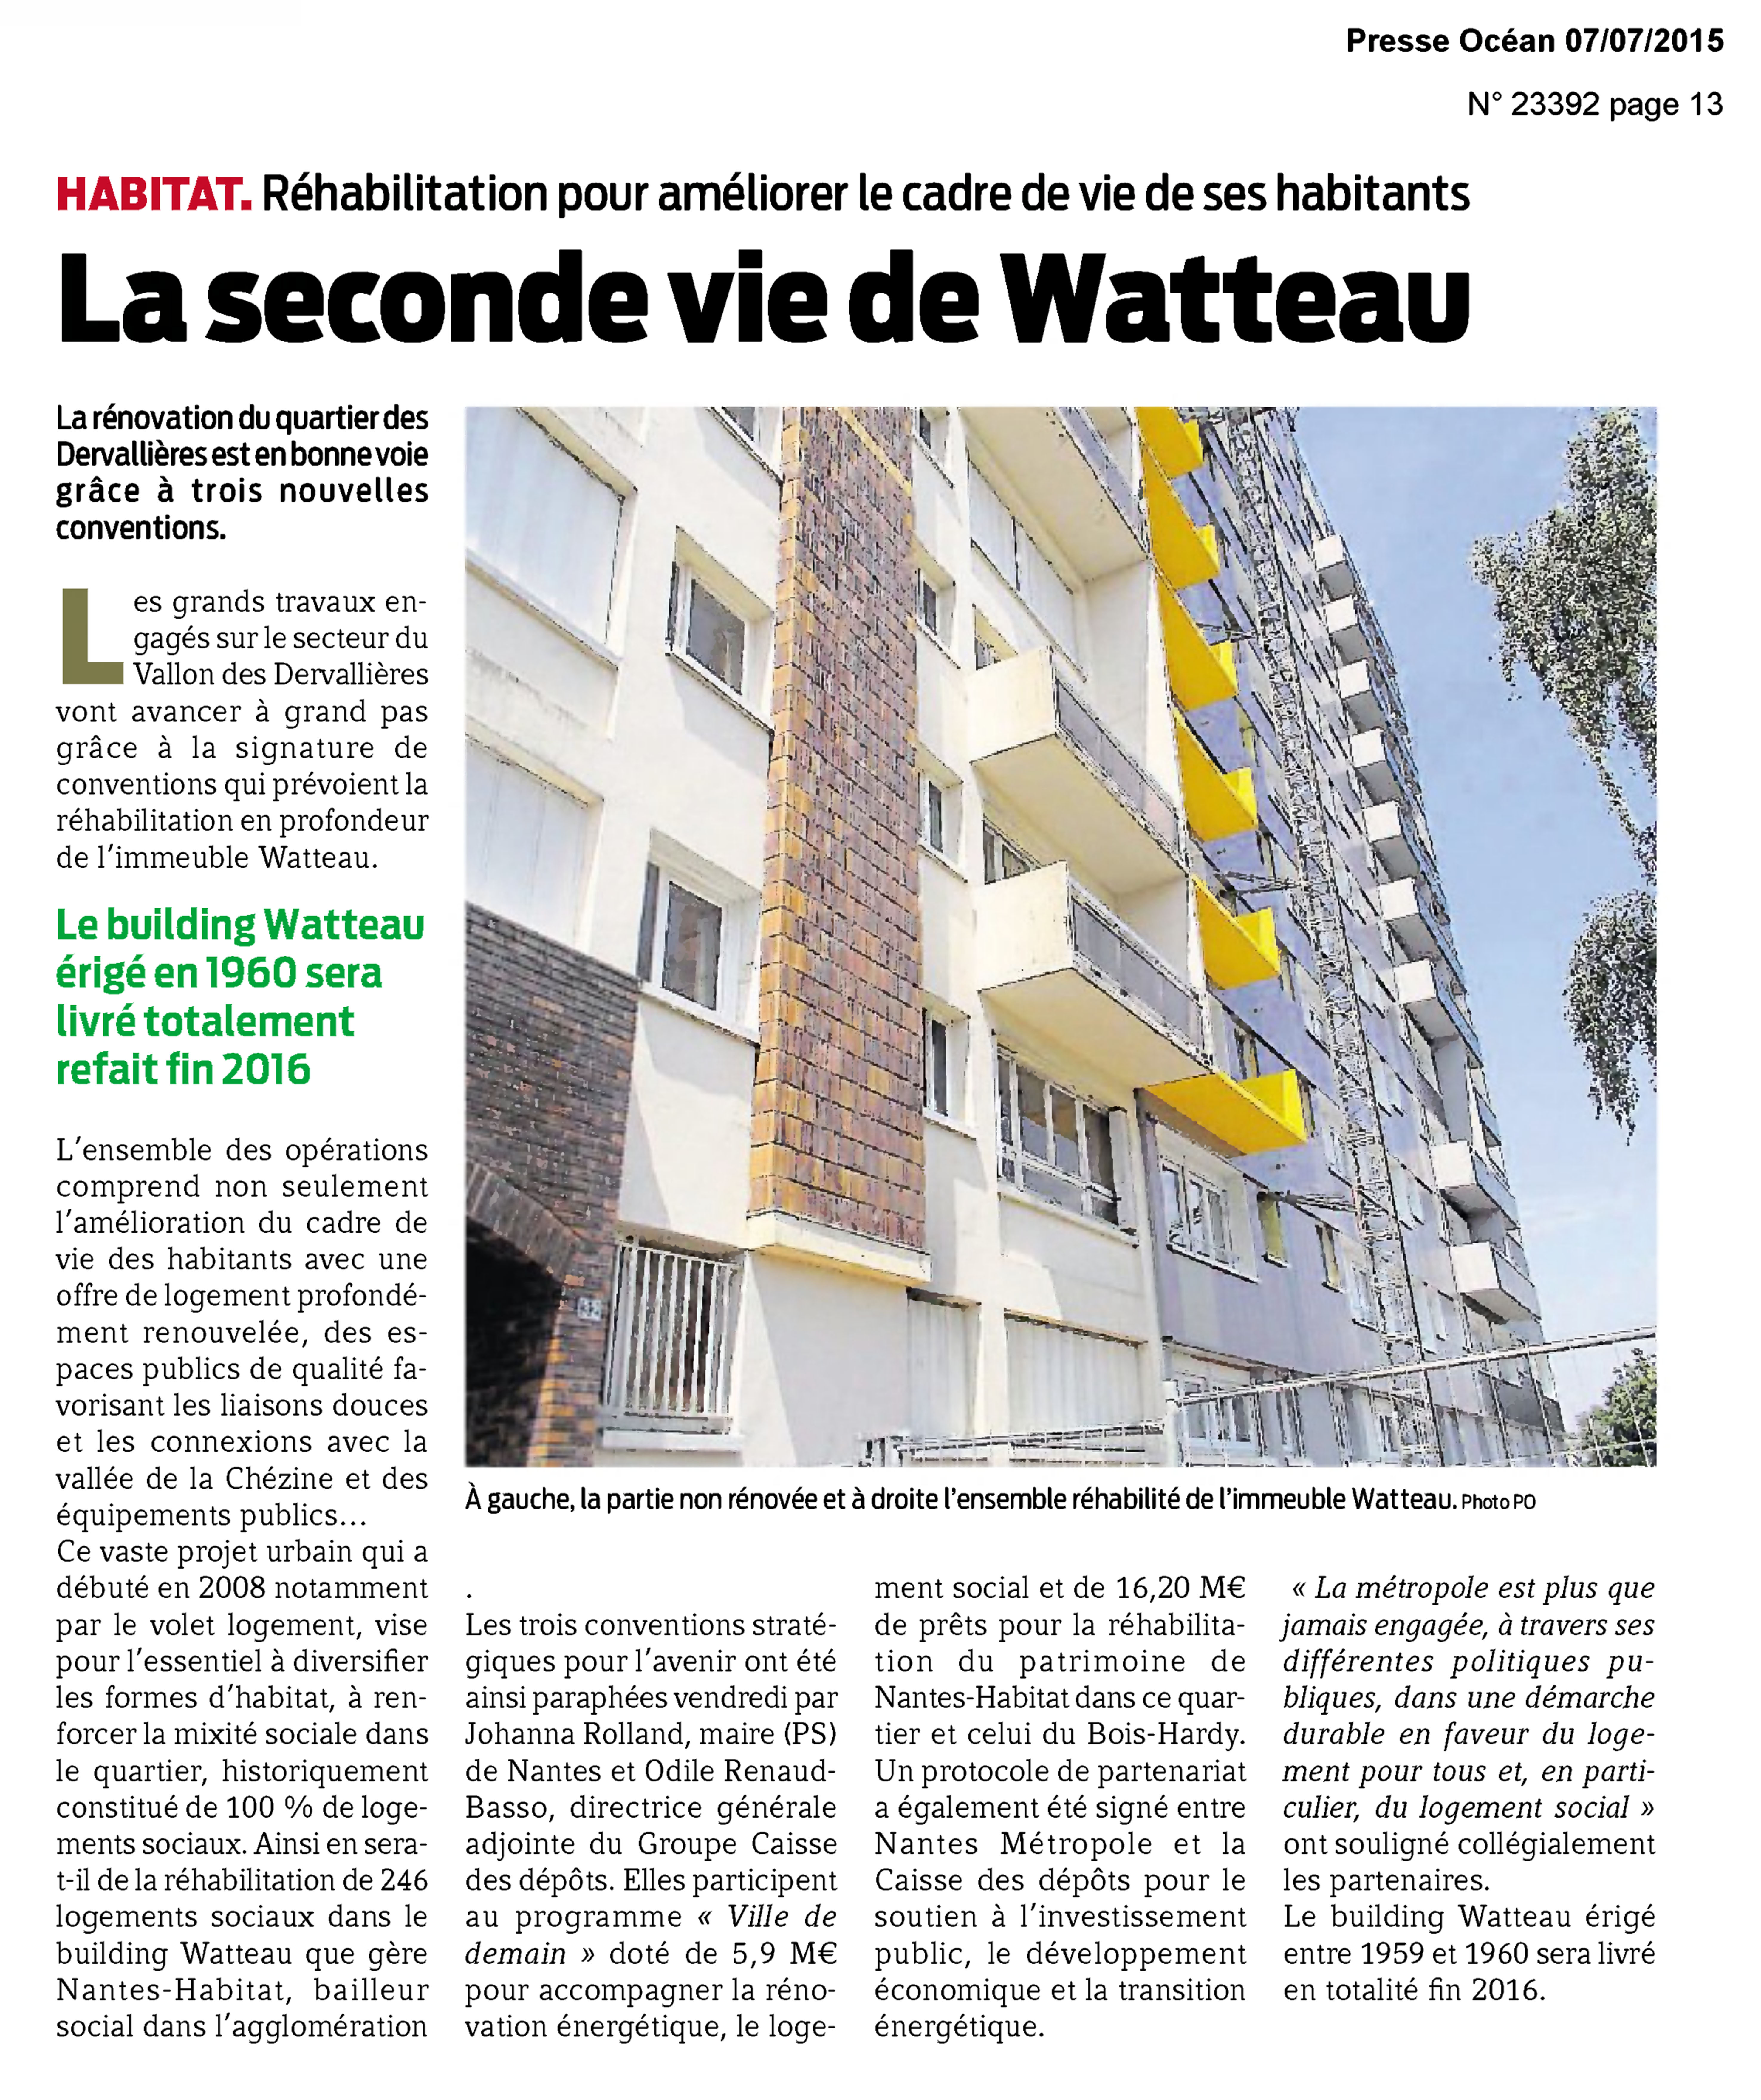 Presse Océan - Watteau